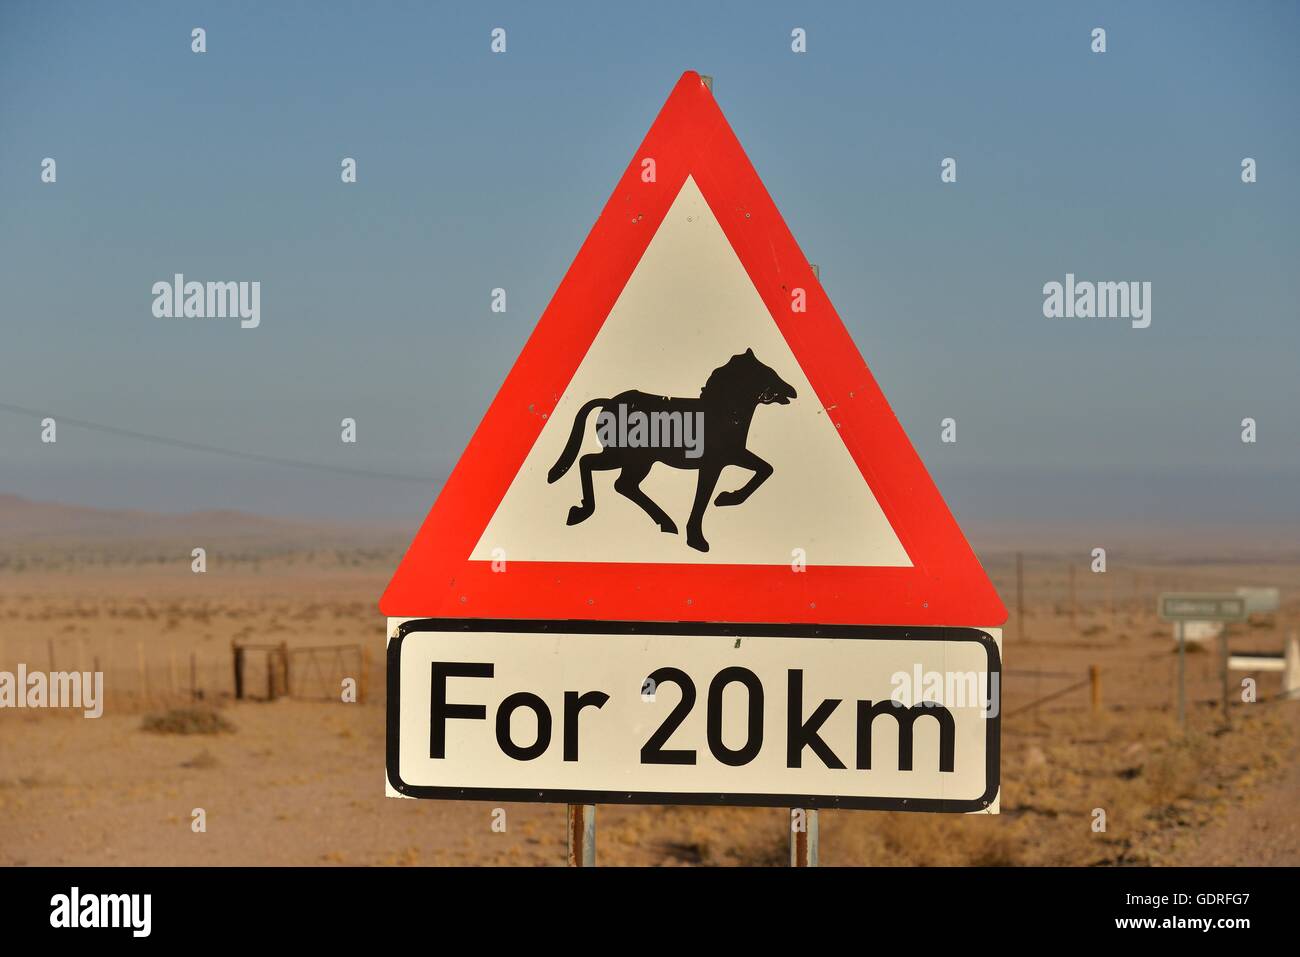 Señal de advertencia Atención caballos, cerca de Aus, Región Karas, Namib, Namibia Foto de stock